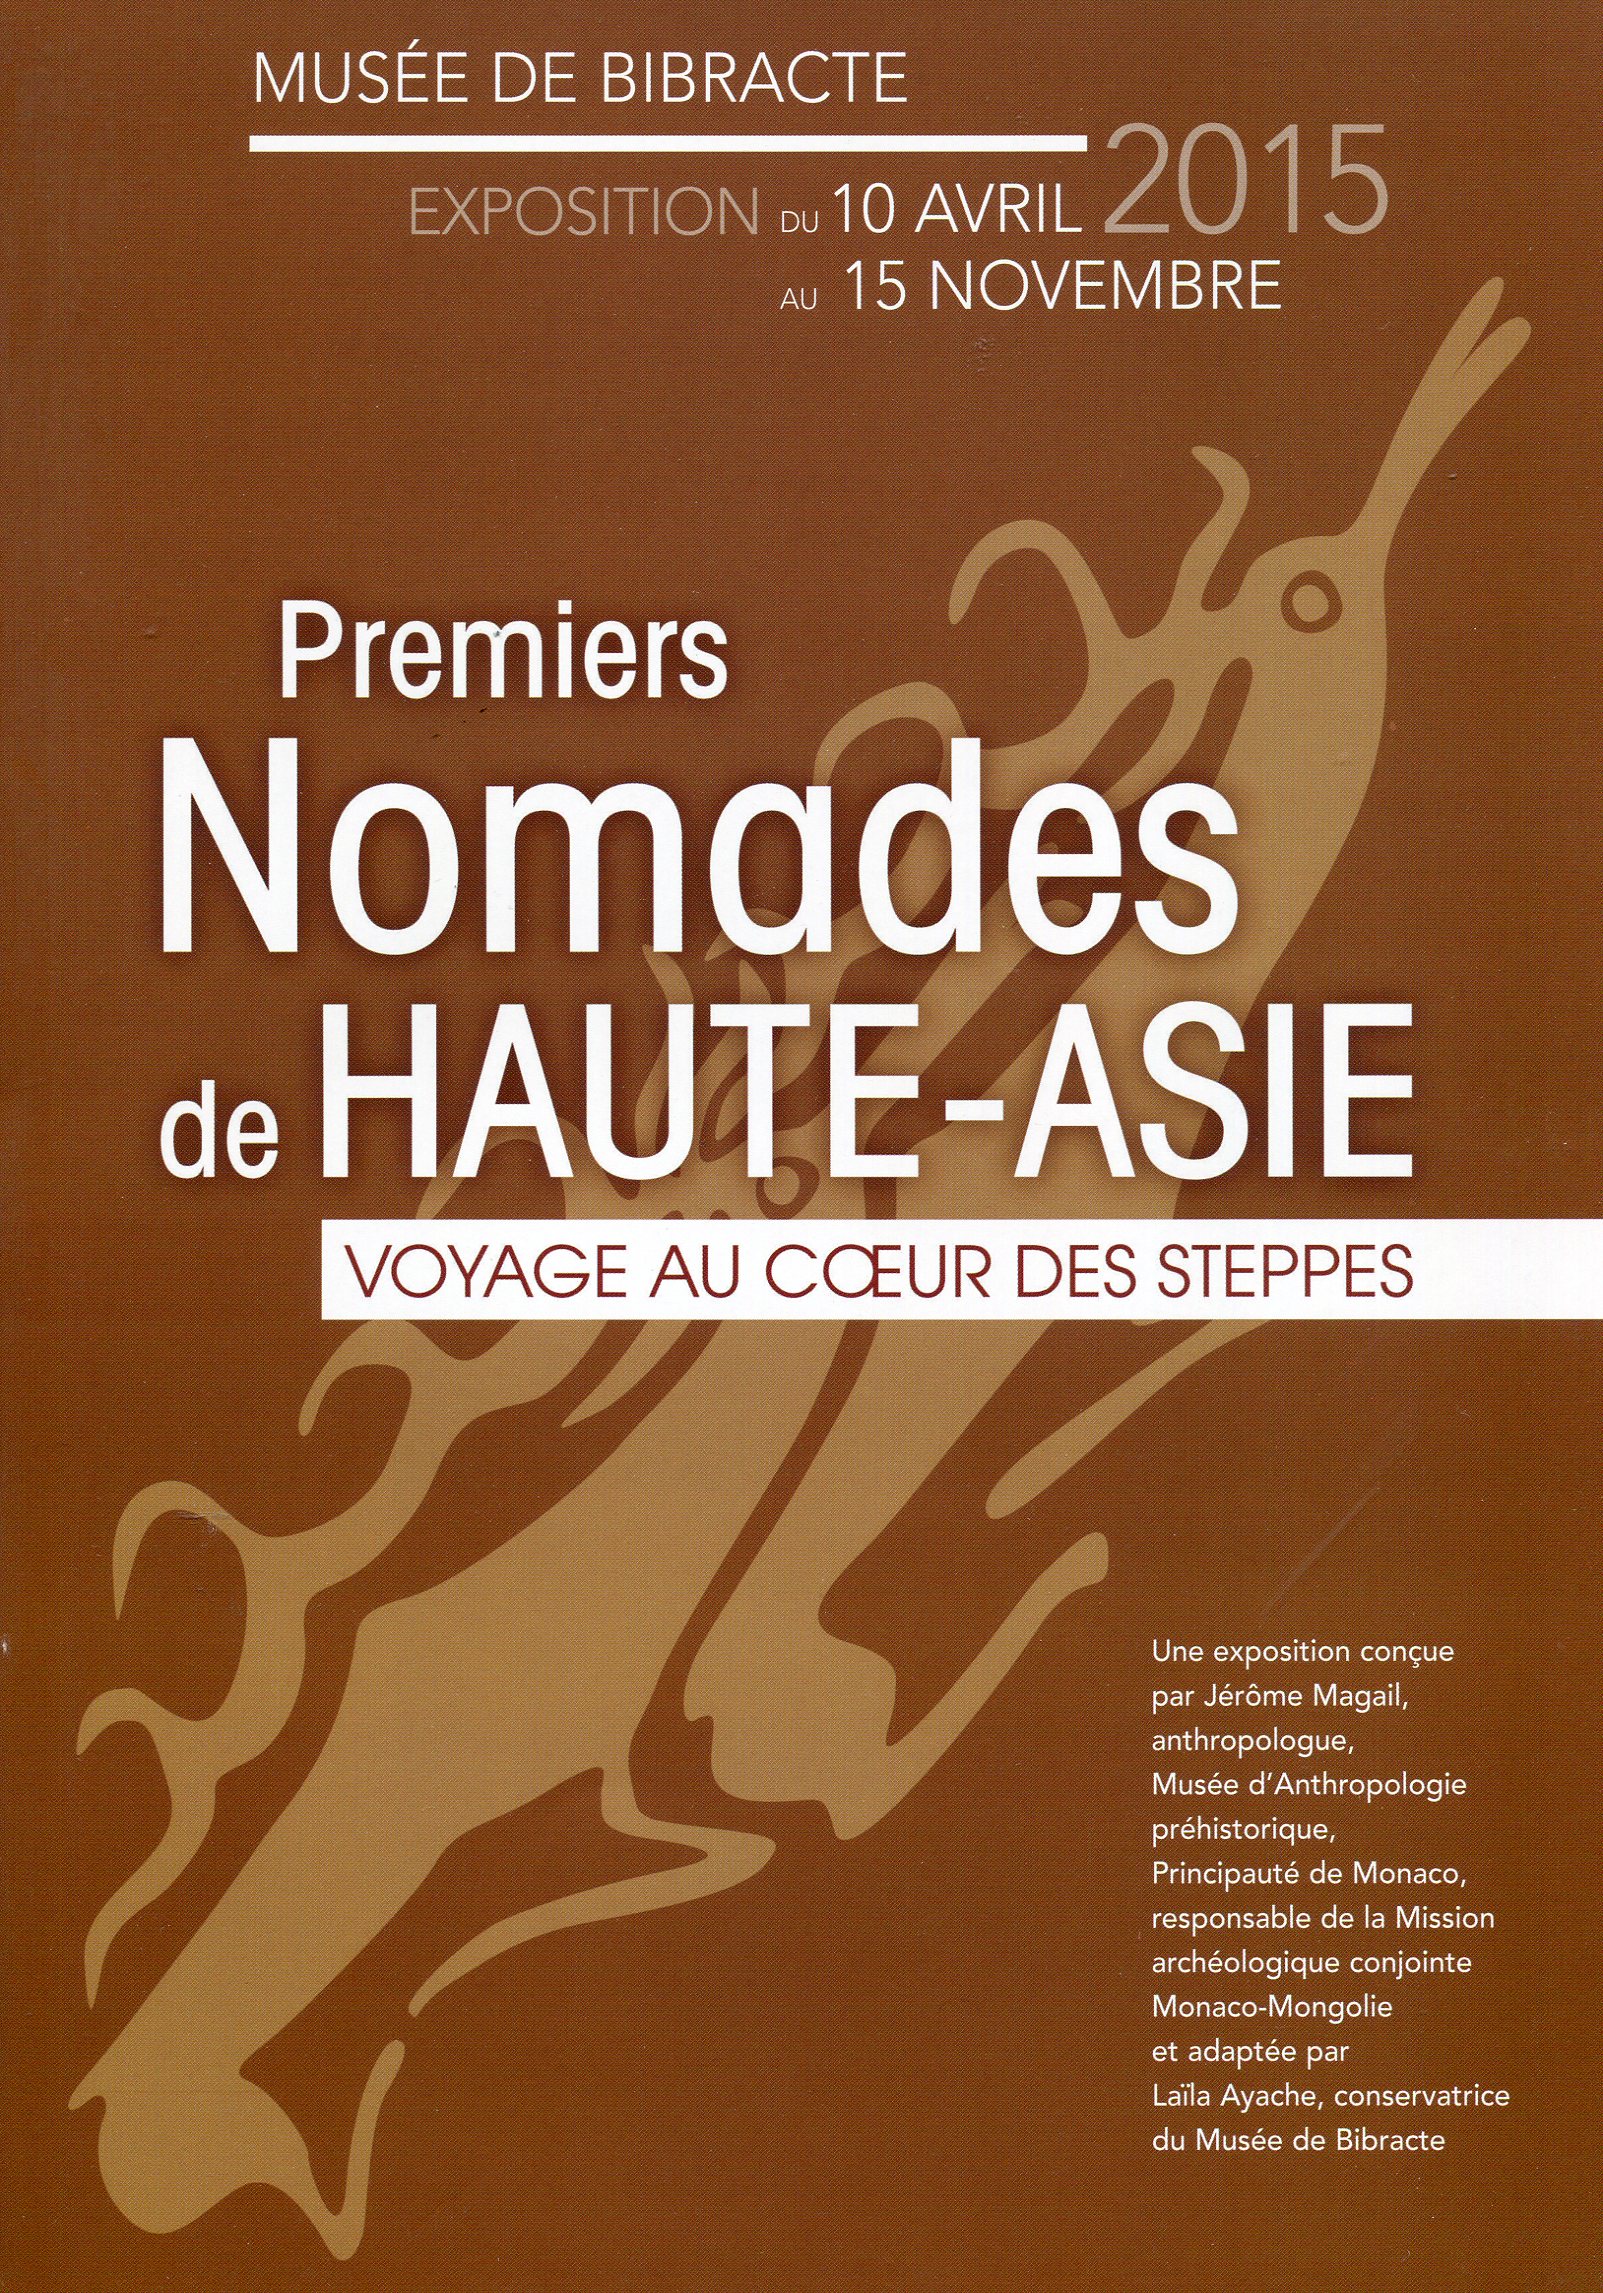 Premiers nomades de Haute-Asie. Voyage au coeur des steppes, (brochure expo. Musée de Bibracte, avr.-nov. 2015), 2015, 30 p.